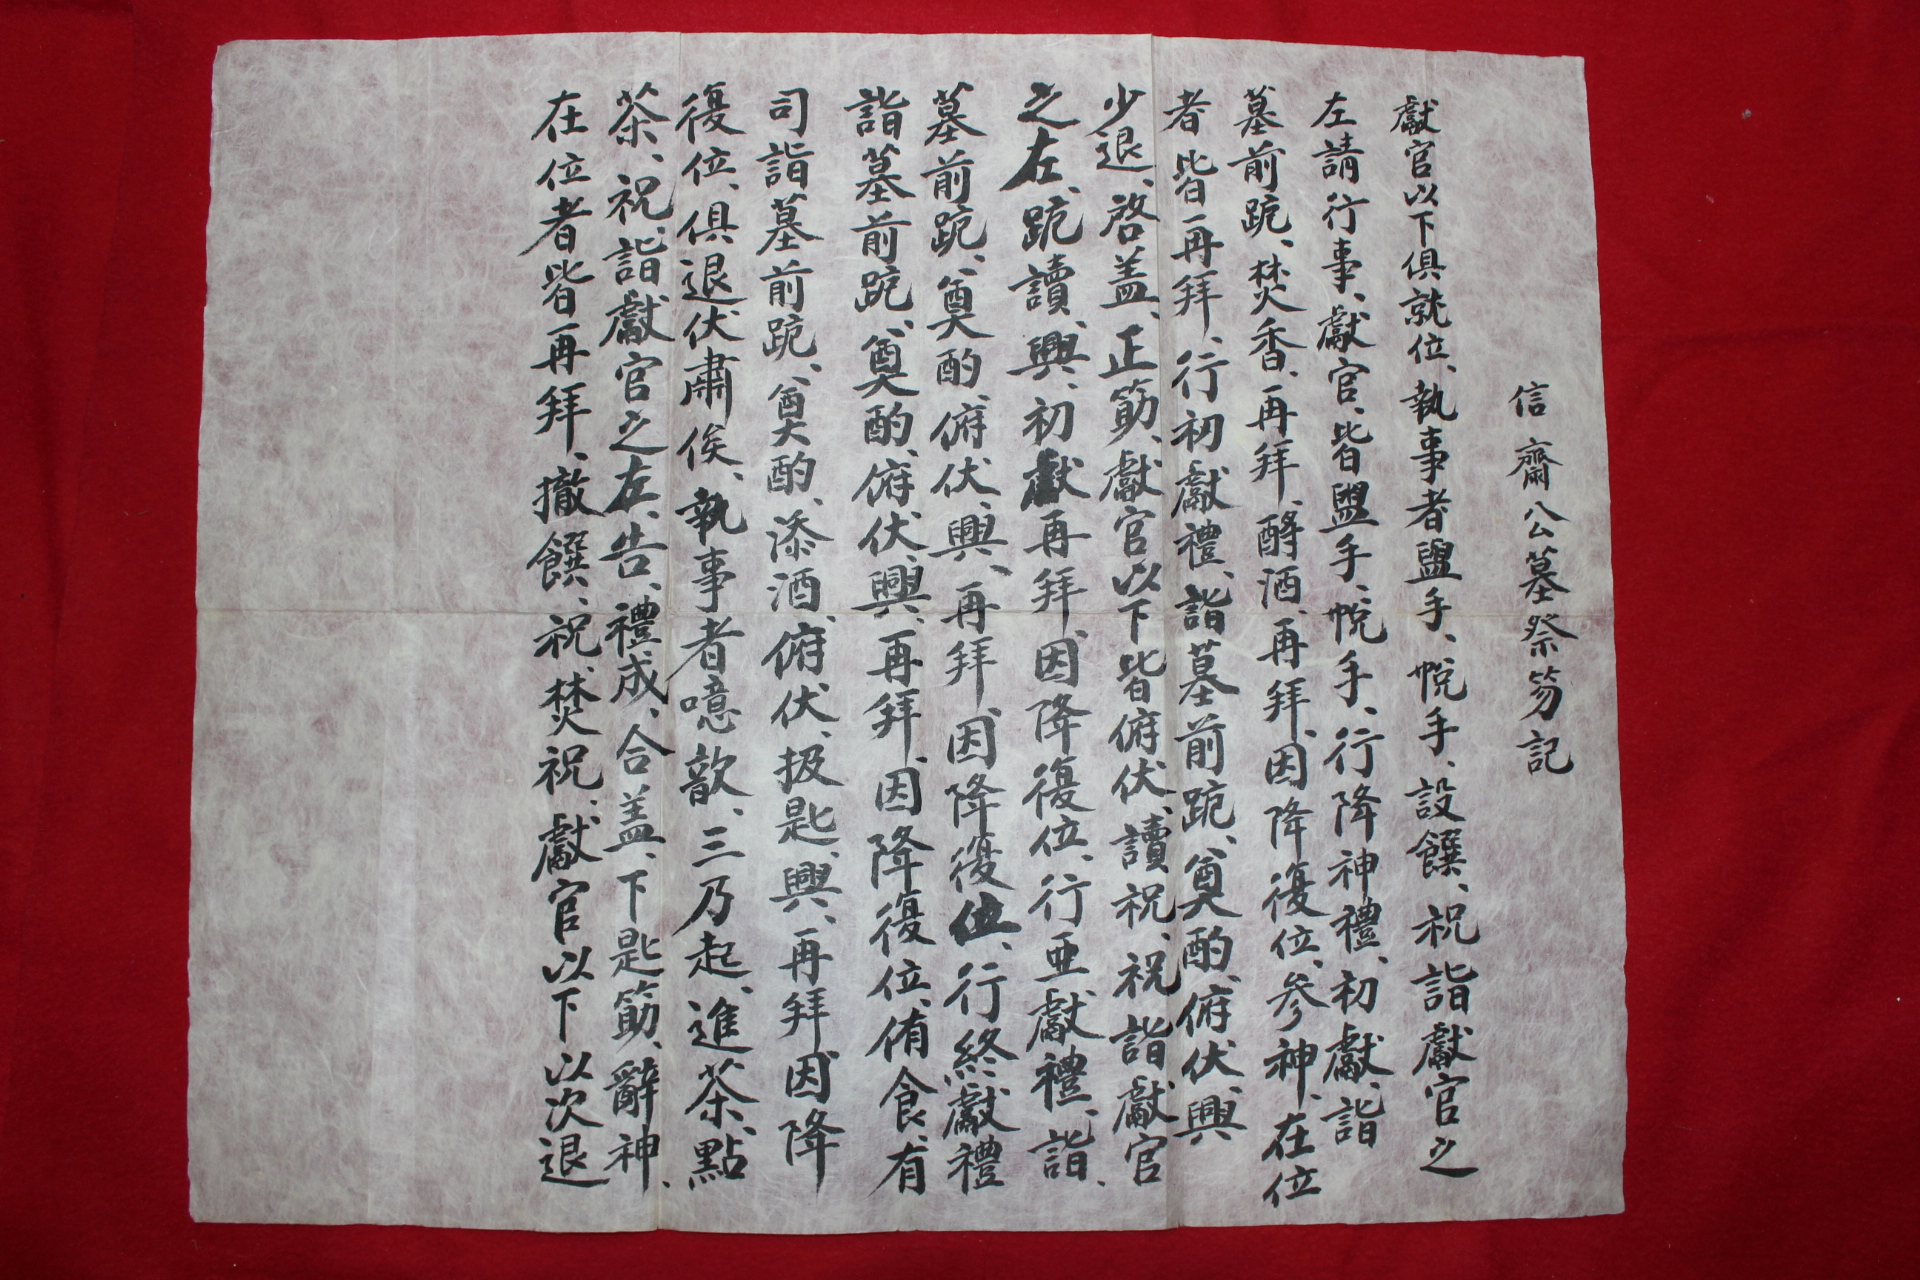 248-조선시대 신재공묘제홀기(信齋公墓祭笏記)